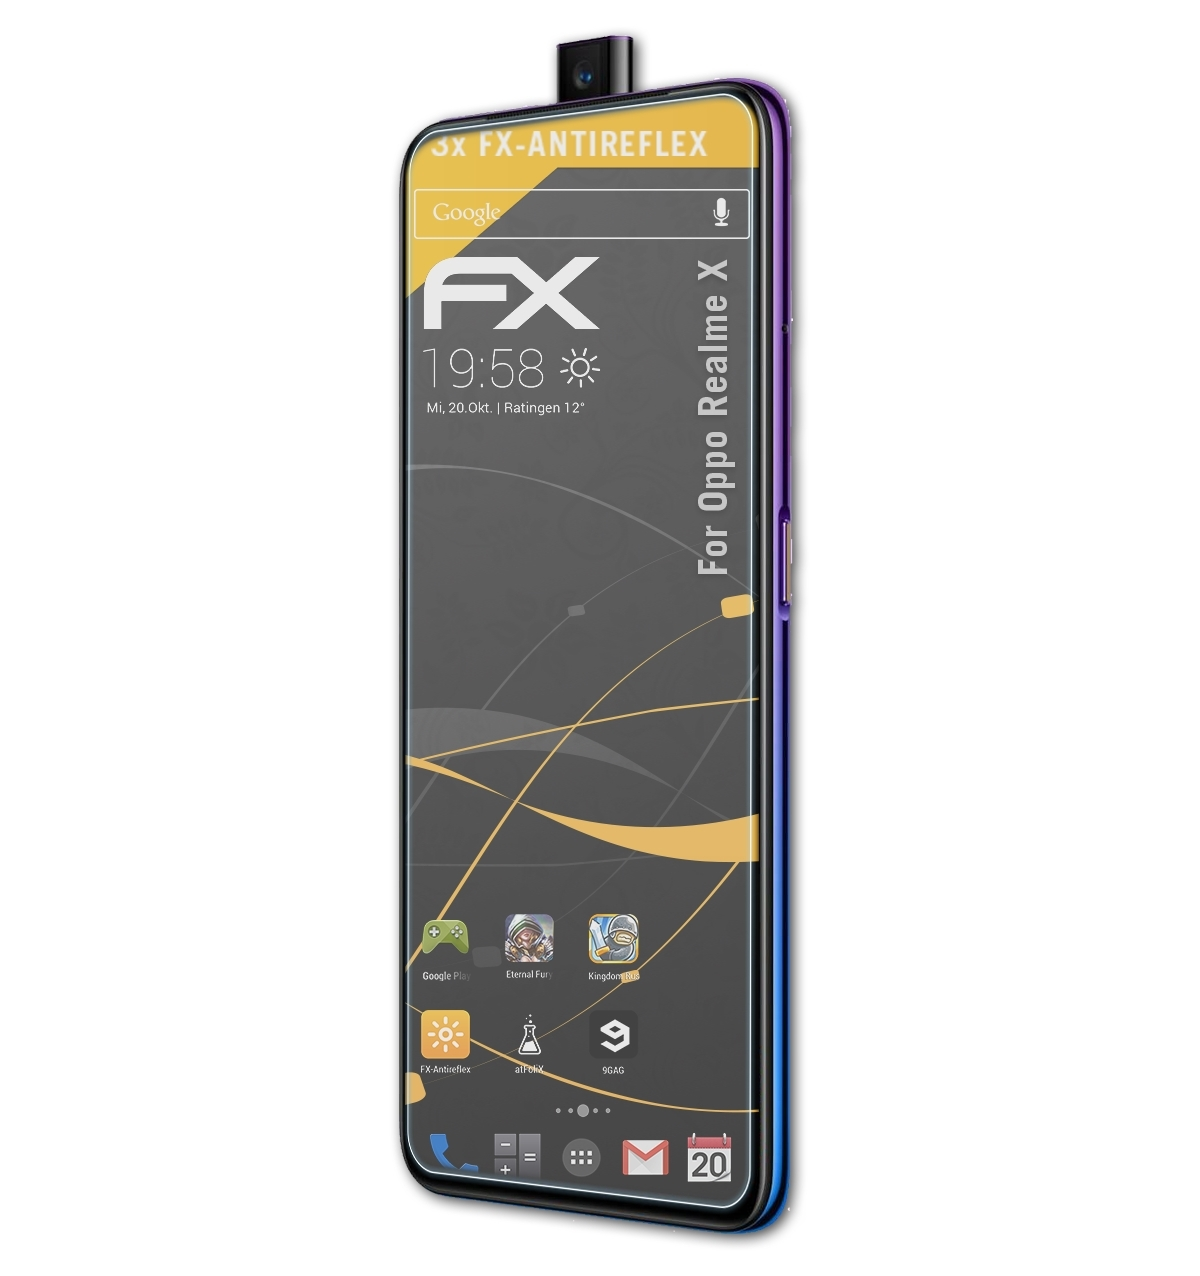 ATFOLIX 3x FX-Antireflex Displayschutz(für Oppo Realme X)